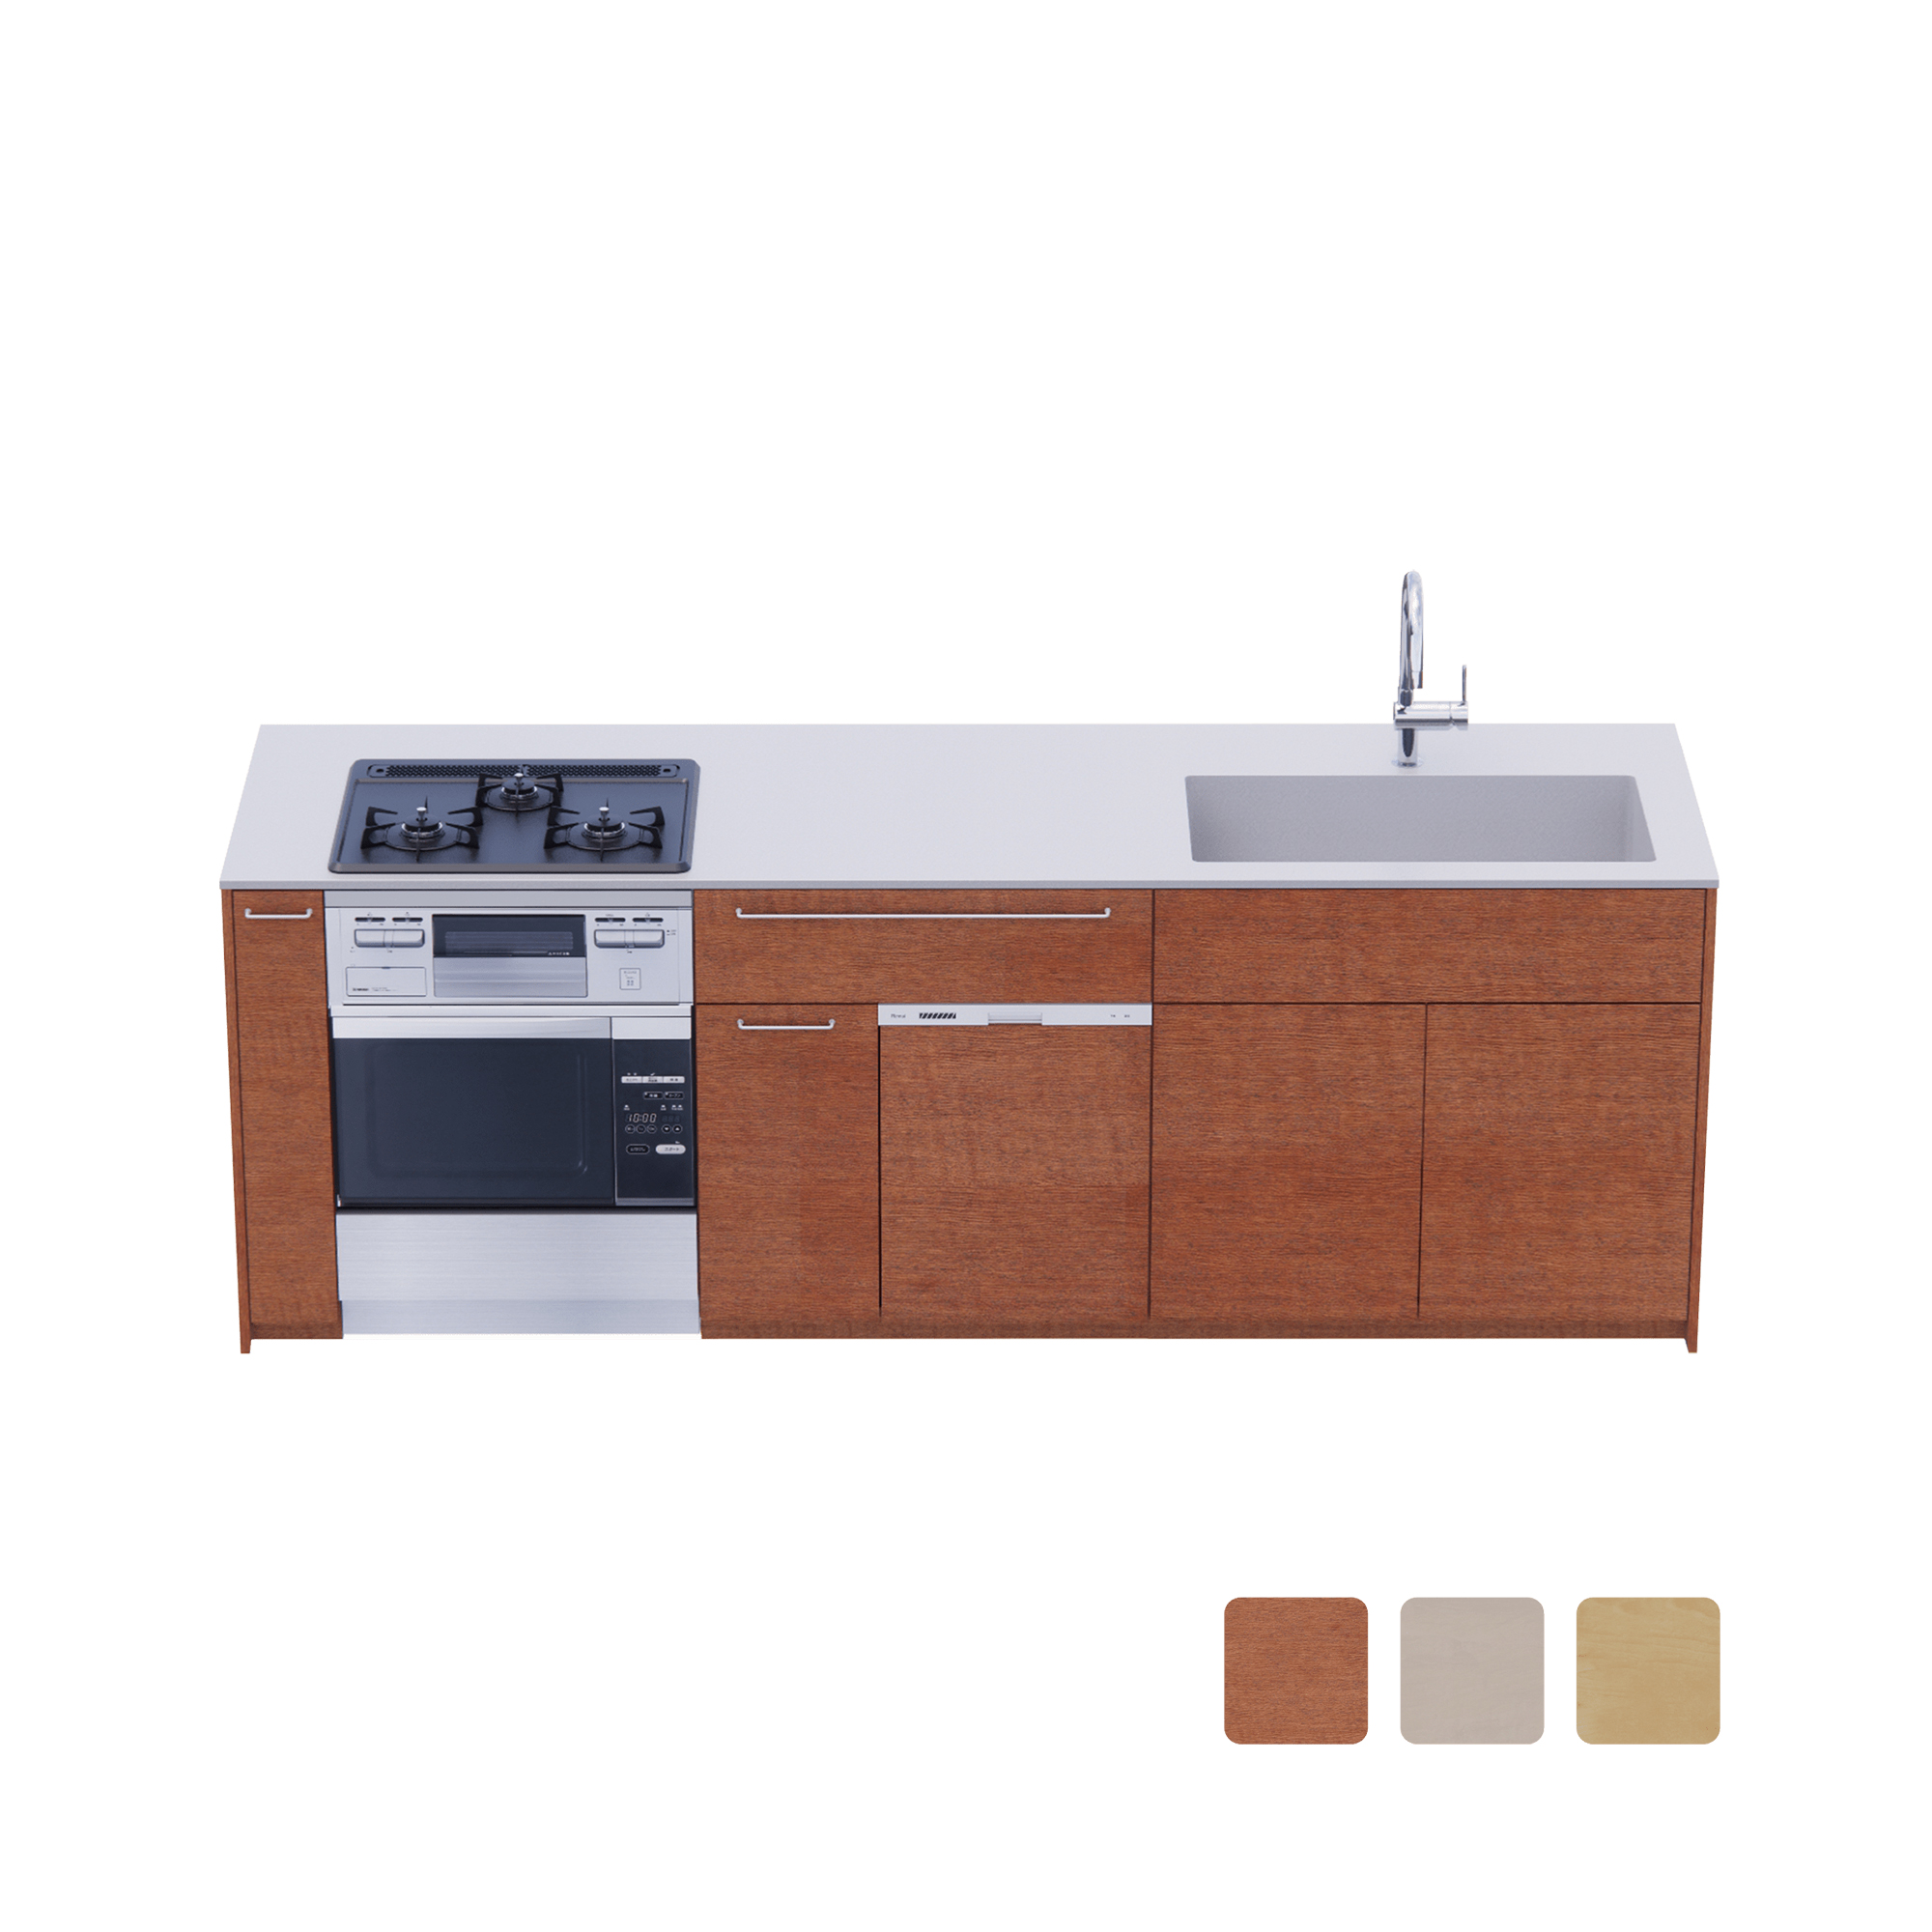 木製システムキッチン 対面型 W2440～2740・コンロあり / オーブンあり / 食洗機あり KB-KC022-46-G183 対面型 W2440　※ 別売り品の水栓・コンロ・オーブン・食洗機を設置した時のイメージです